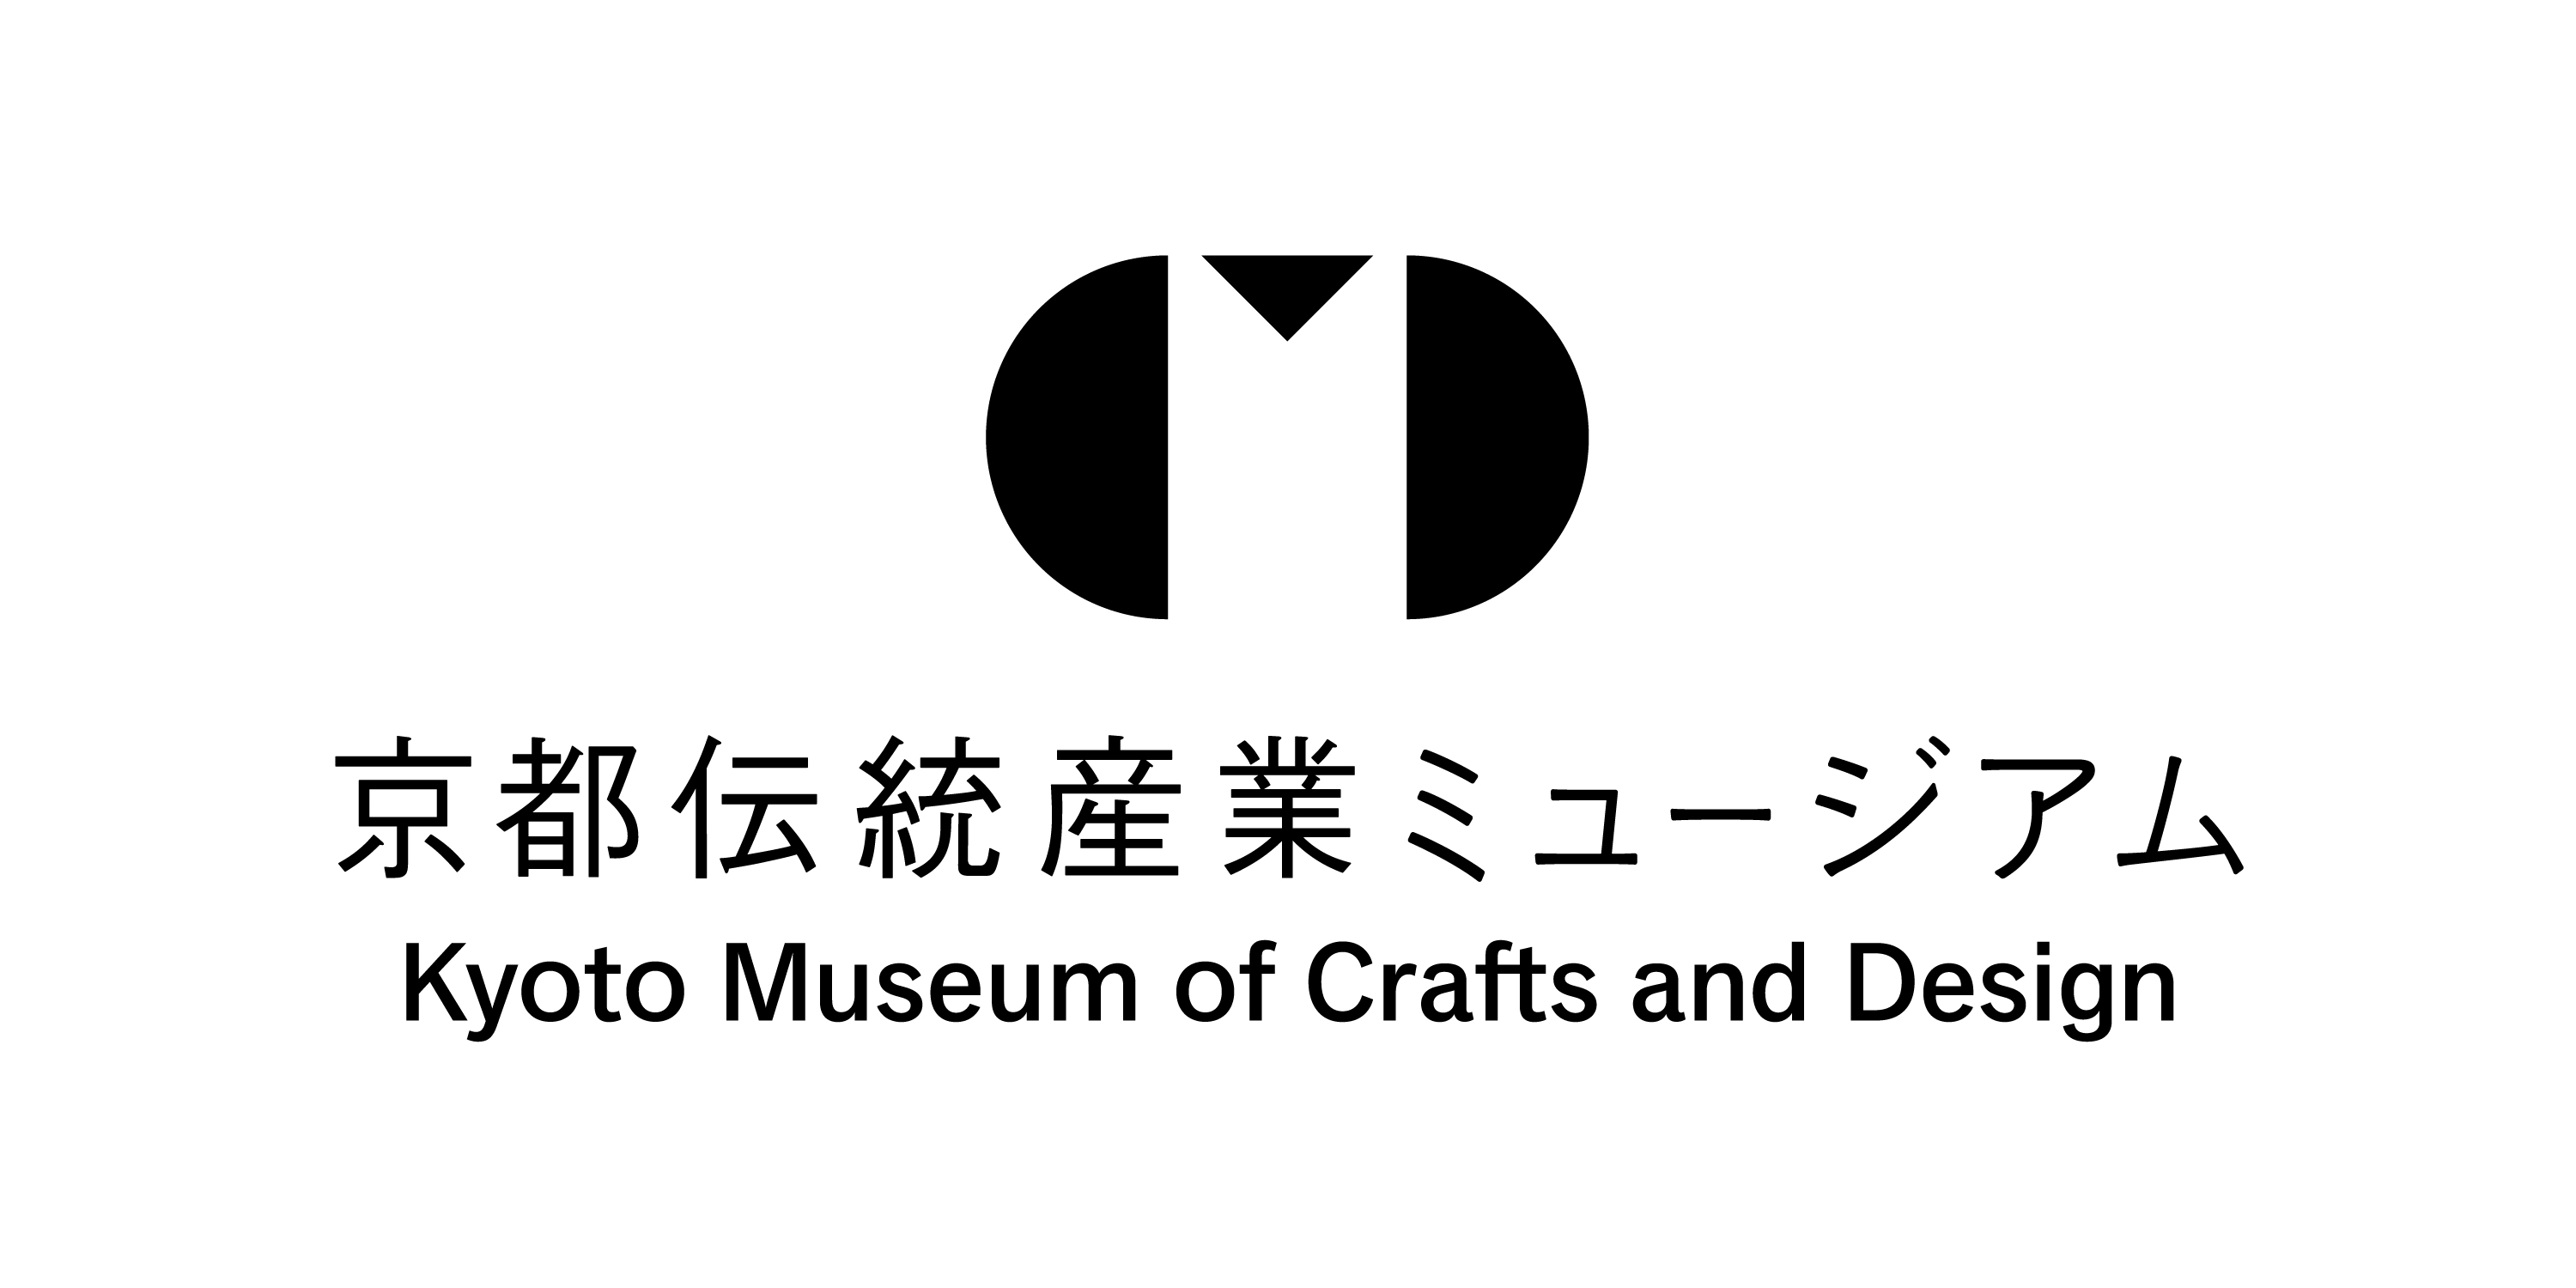 京都伝統産業ミュージアム